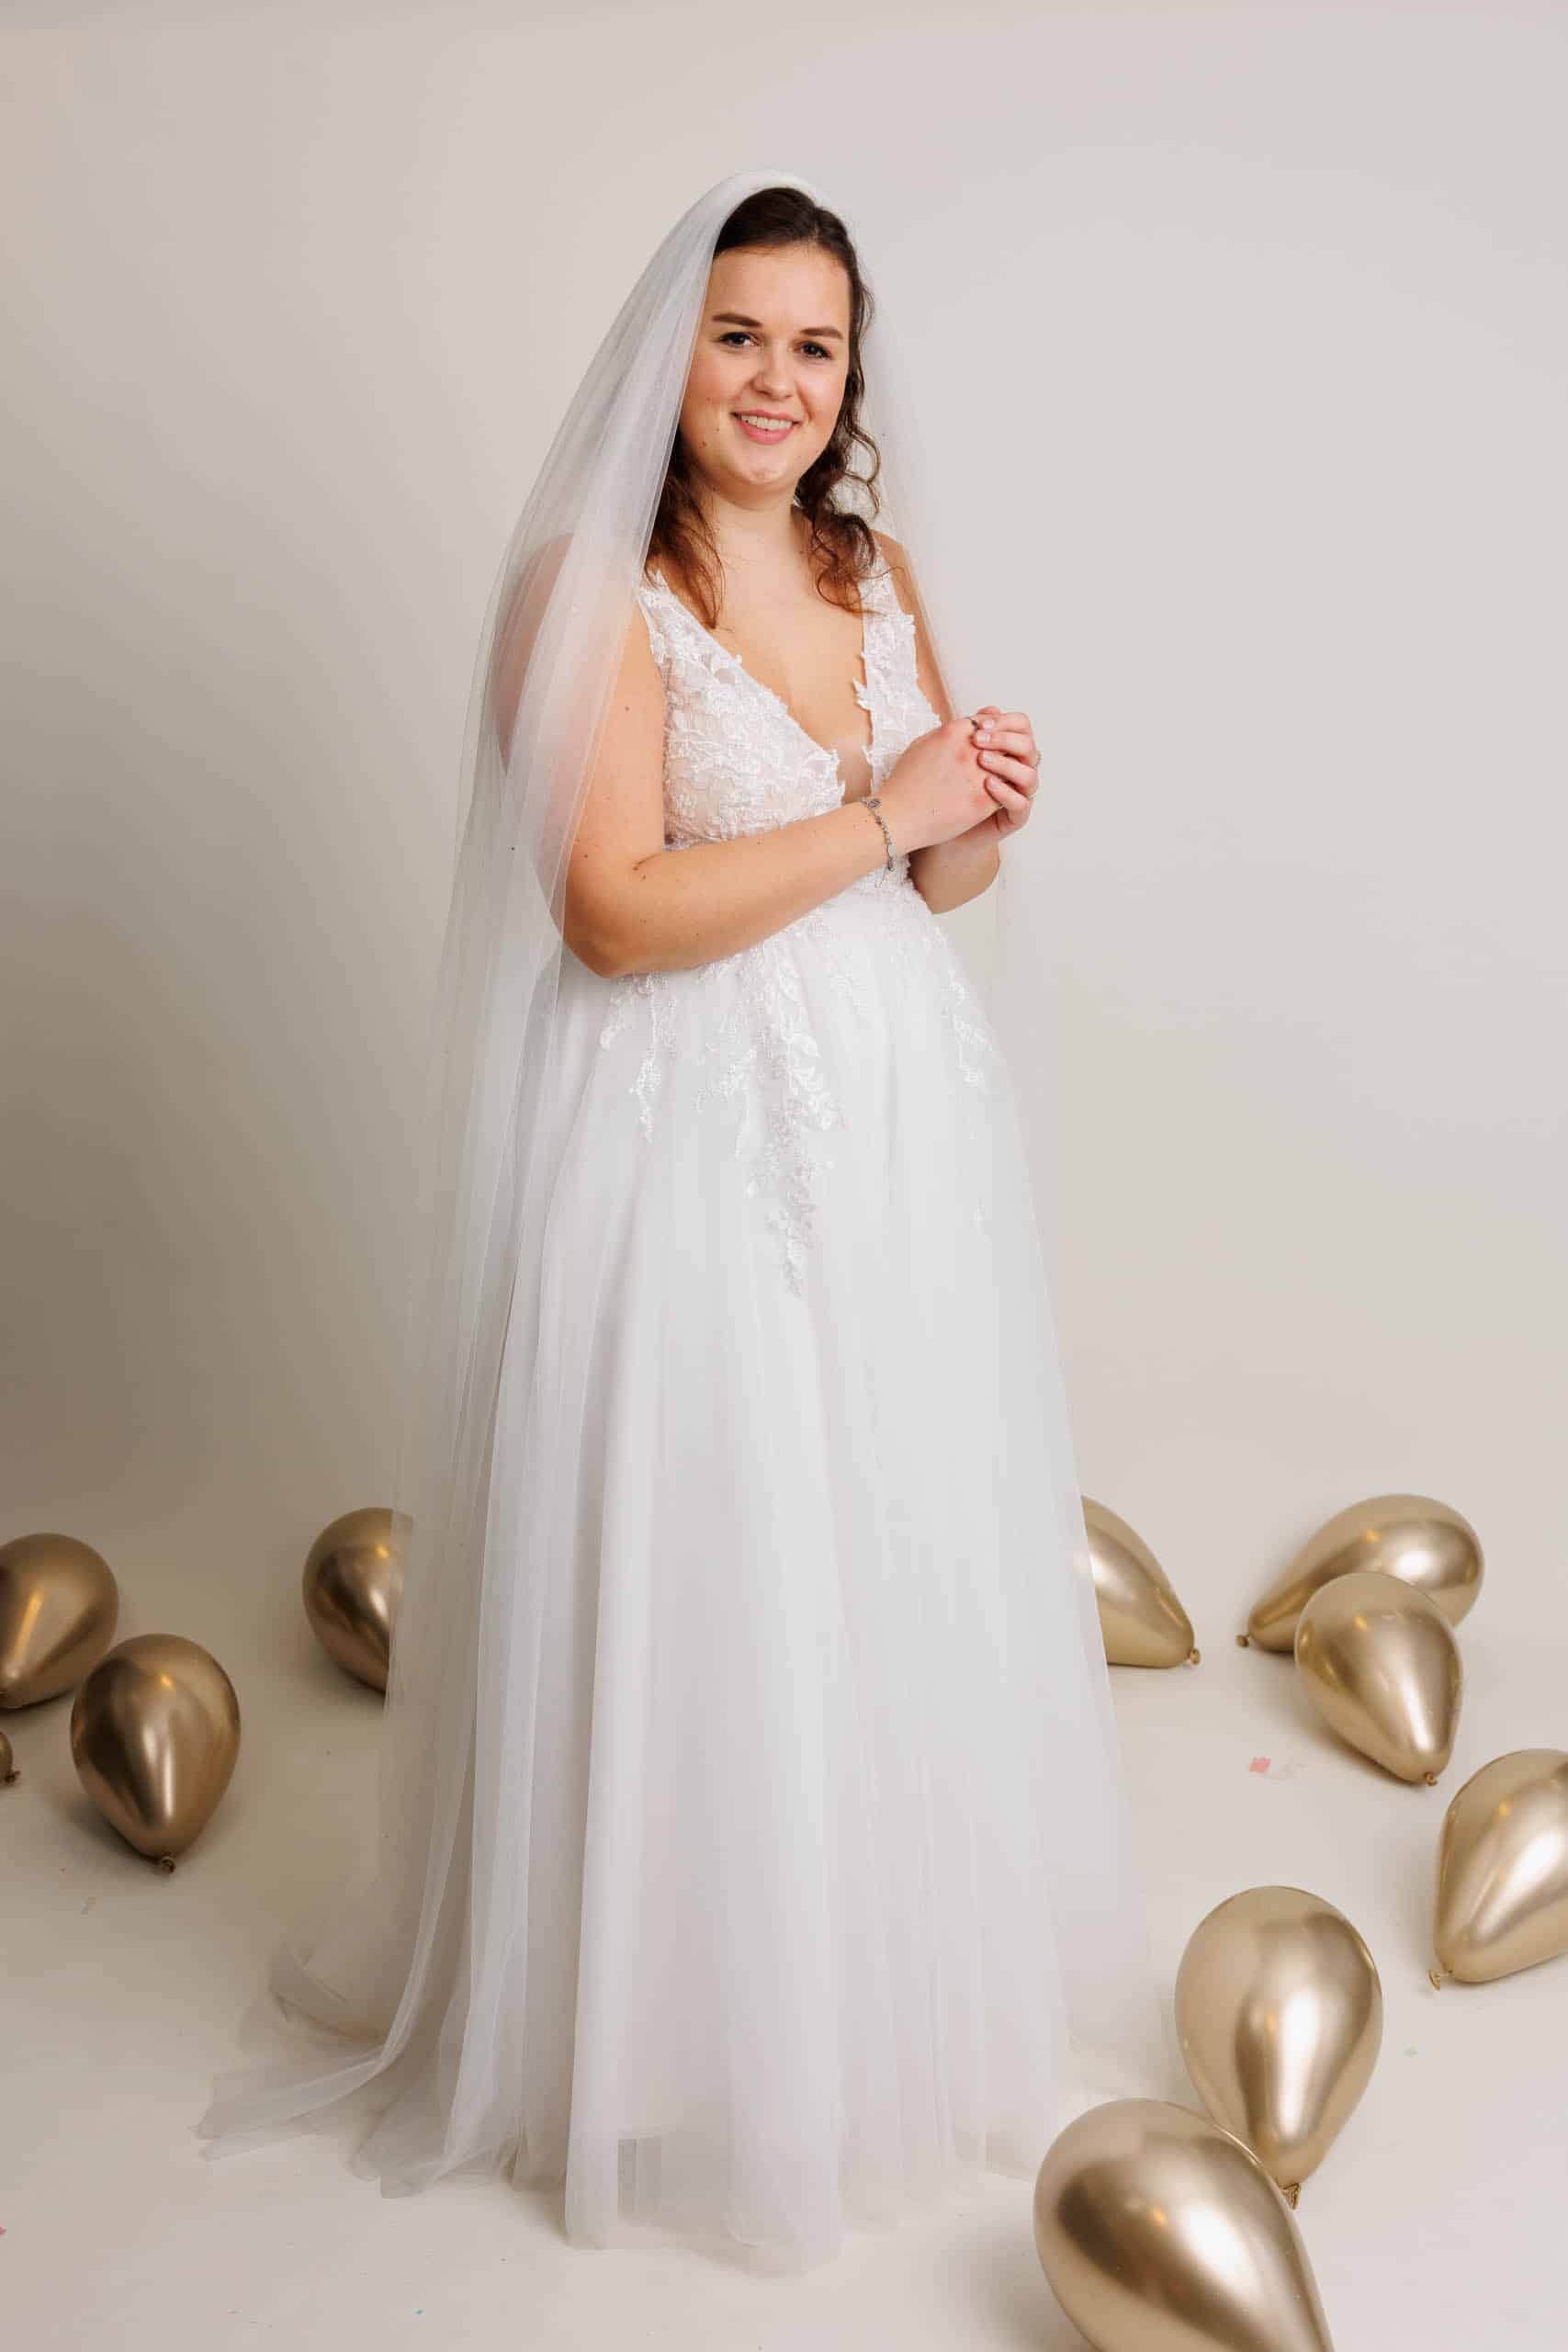 Een vrouw in een trouwjurk poseert voor ballonnen terwijl ze voor de lol trouwjurken past.